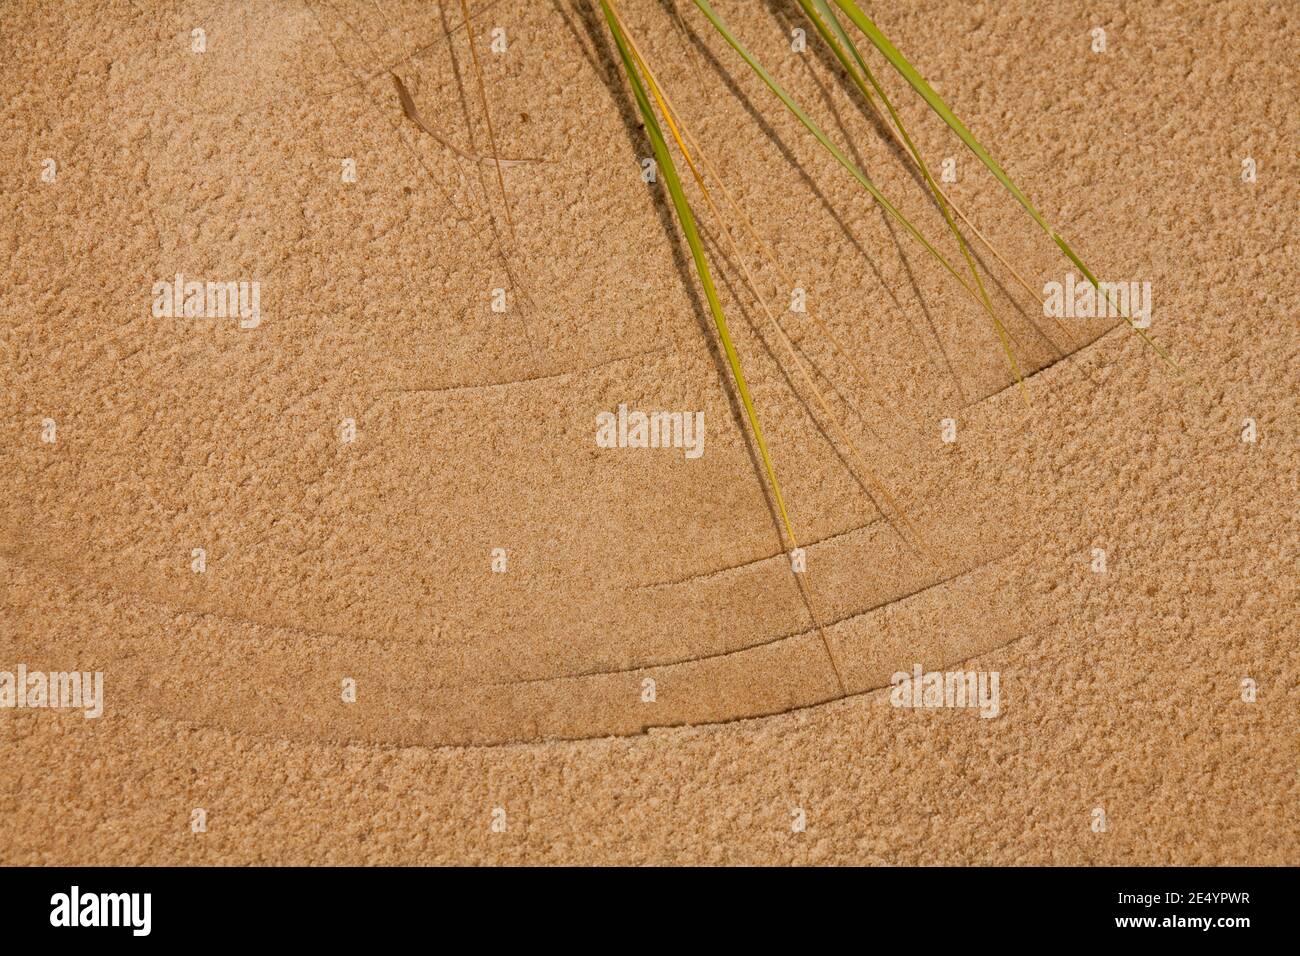 Motifs de sable provenant de graminées balayées par le vent, parc national de Jockeys Ridge, OBX, NC Banque D'Images